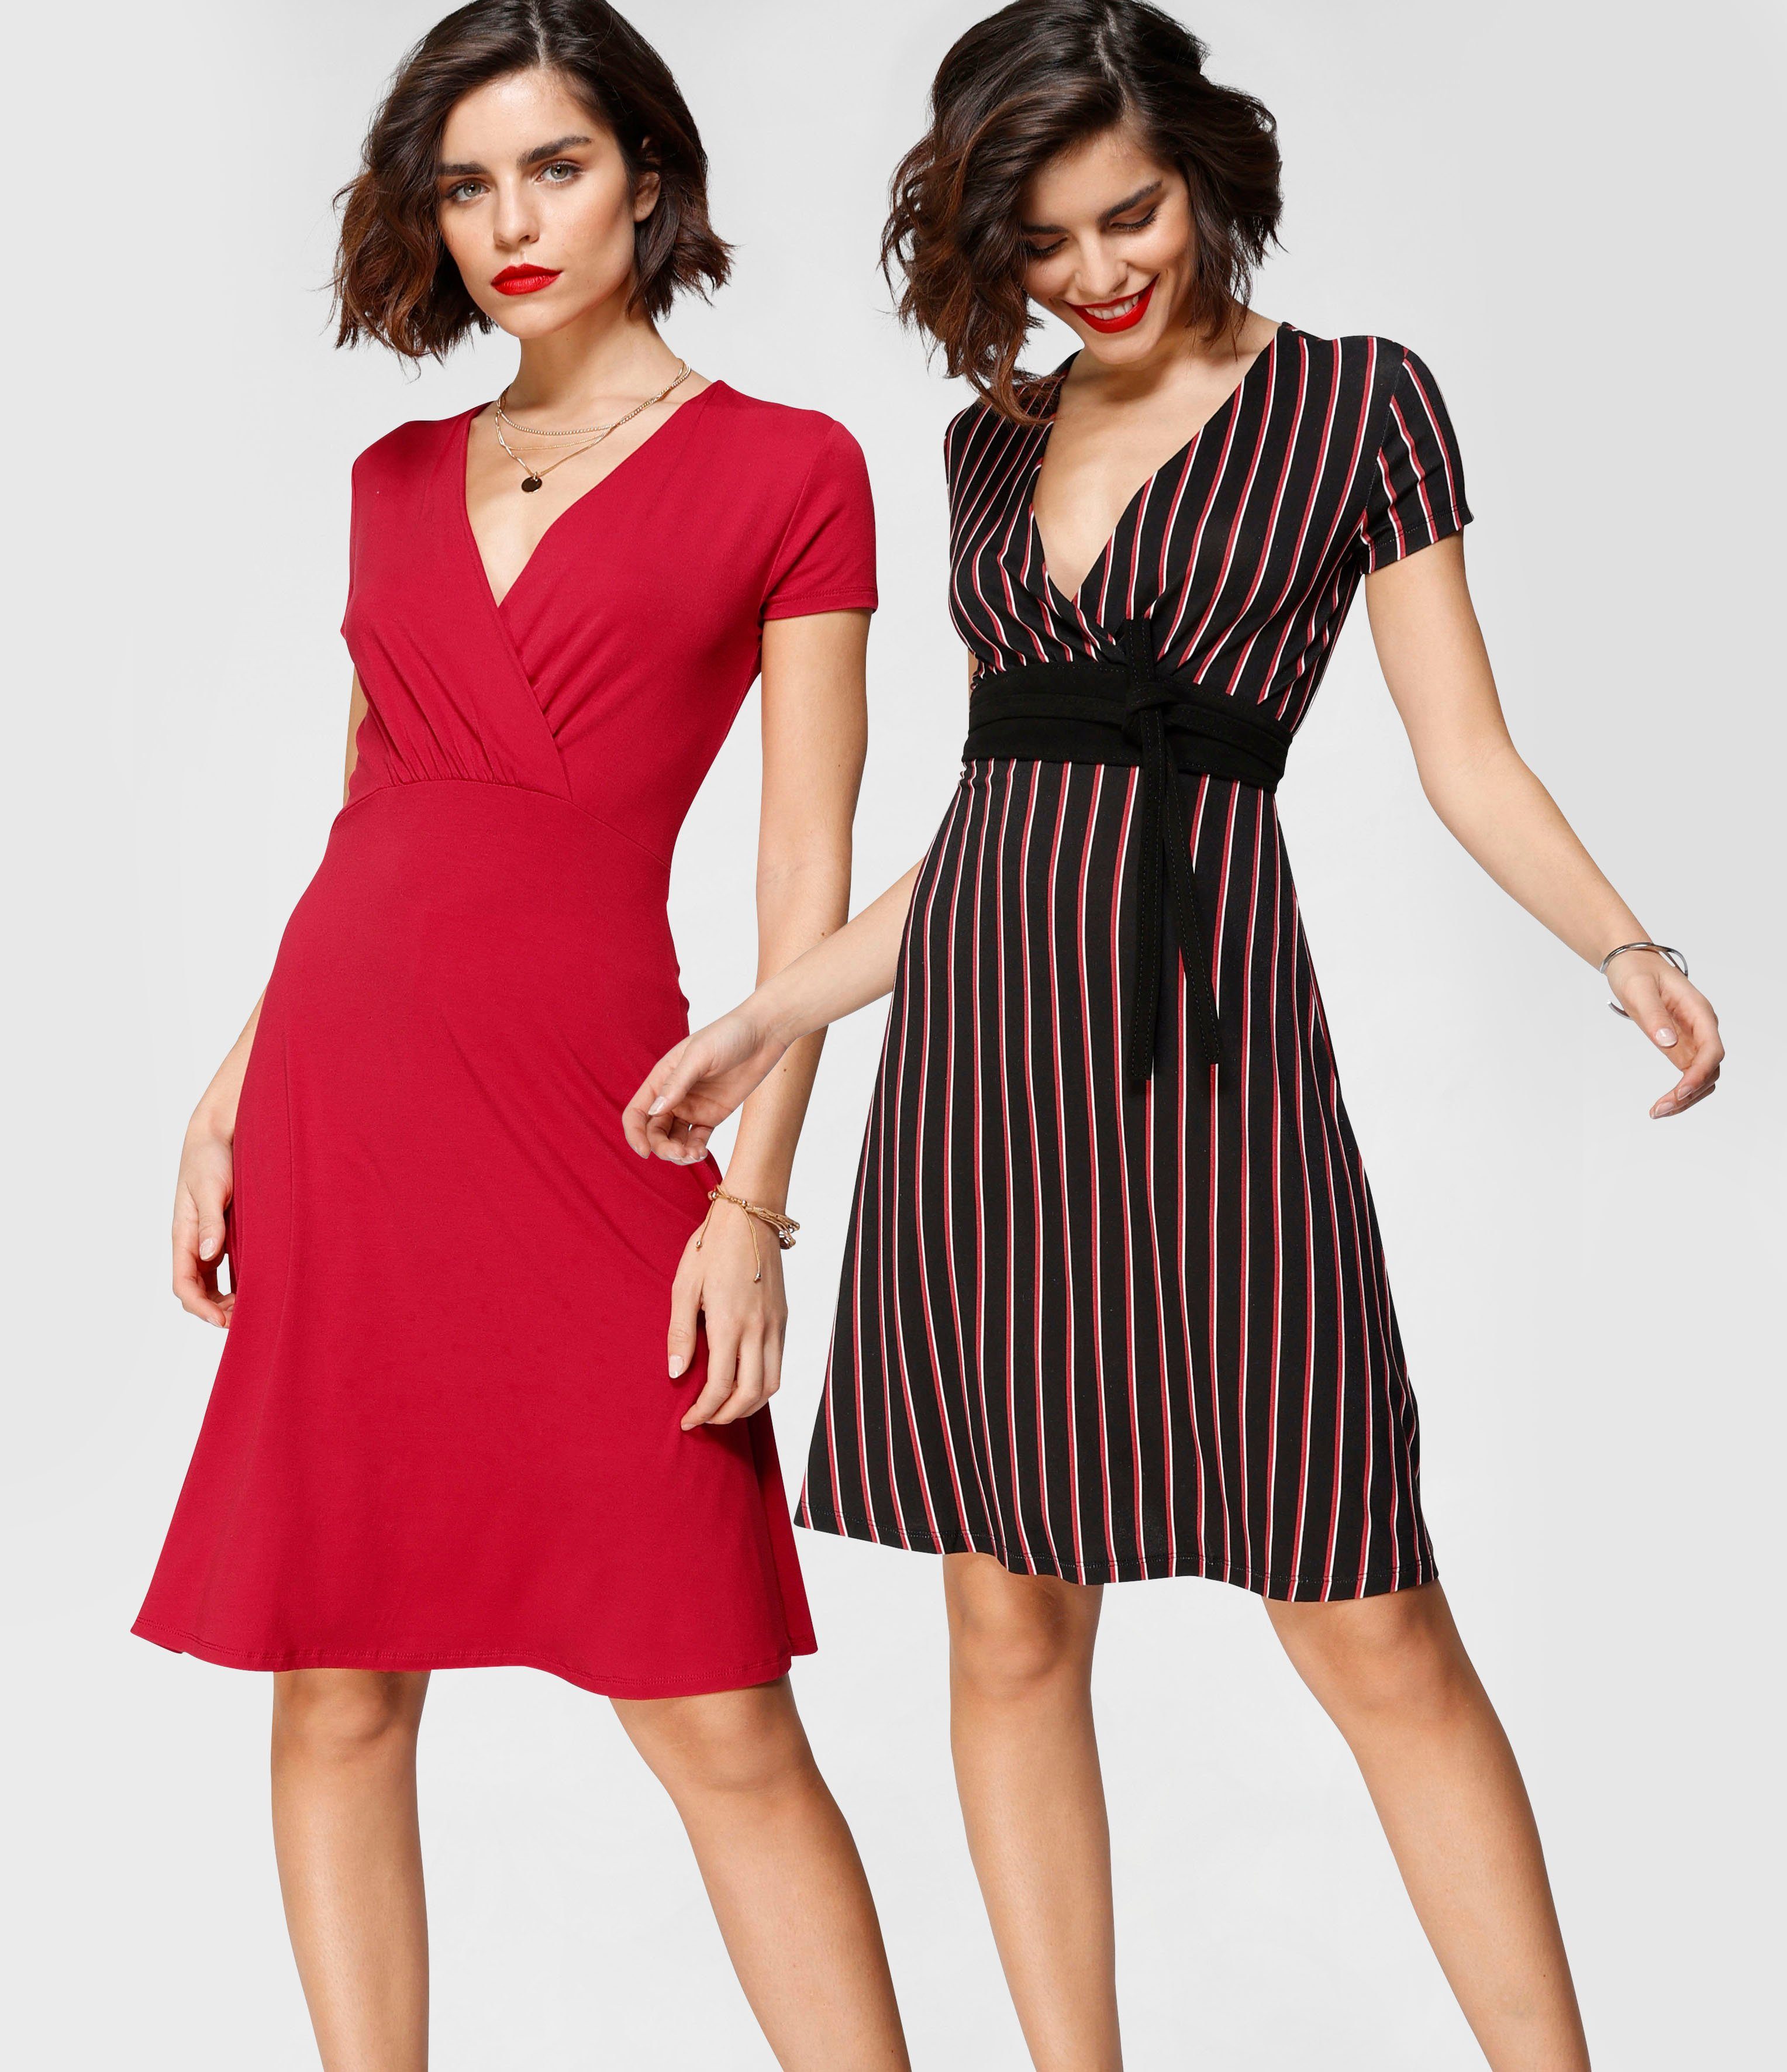 Rotes Kleid online kaufen | OTTO